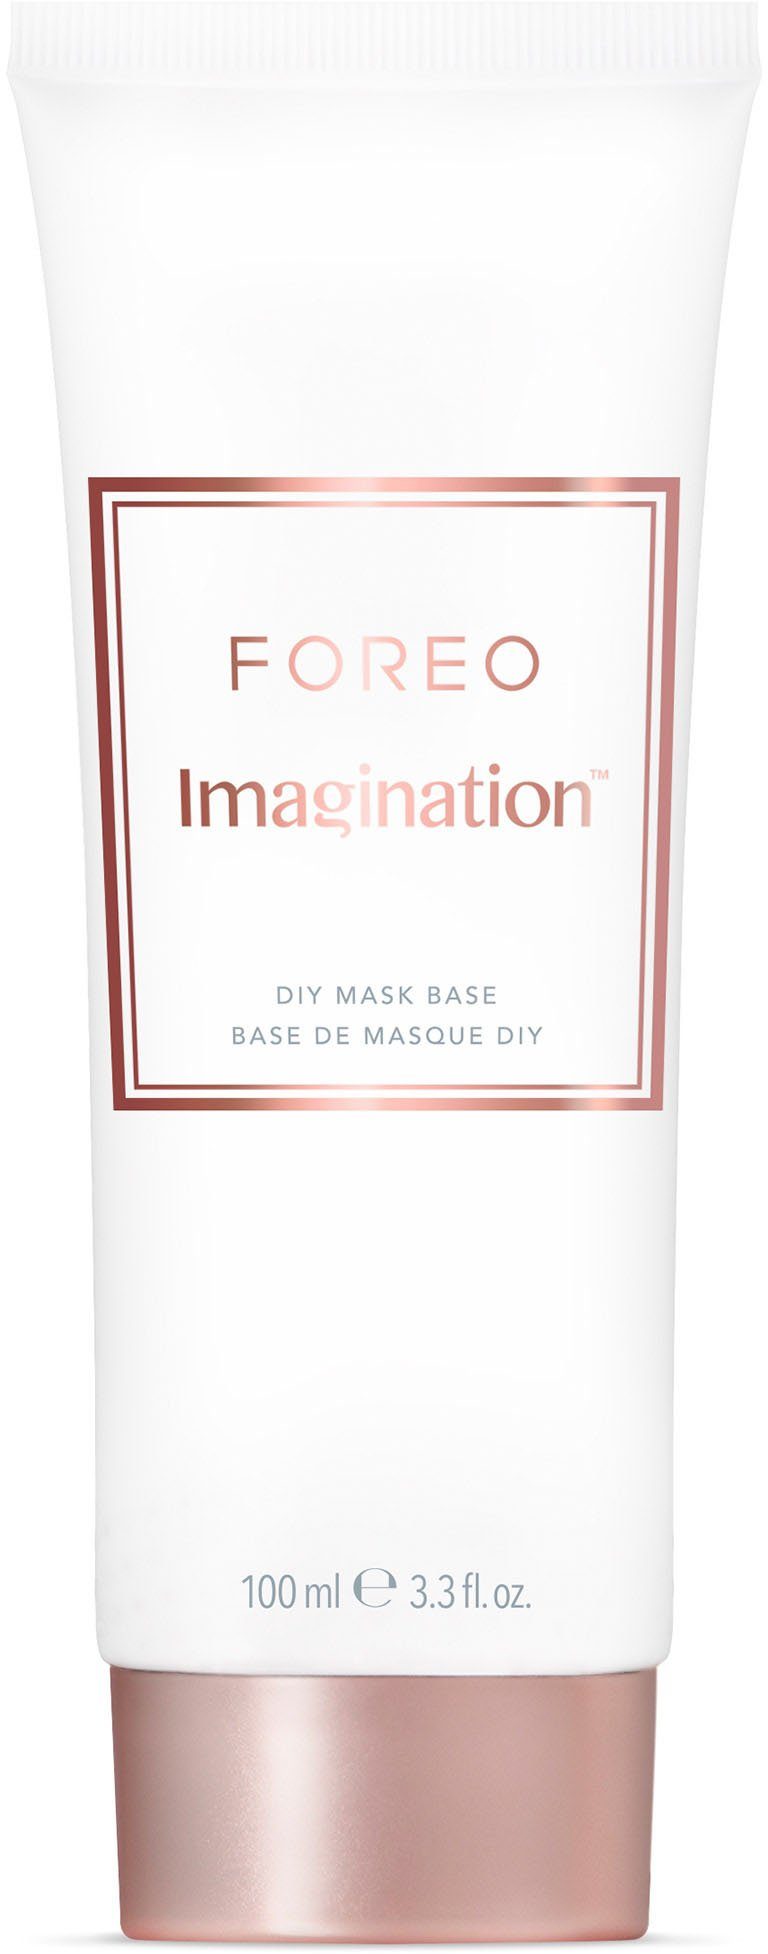 FOREO Gesichtsmaske Imagination Base 100ml Mask DIY